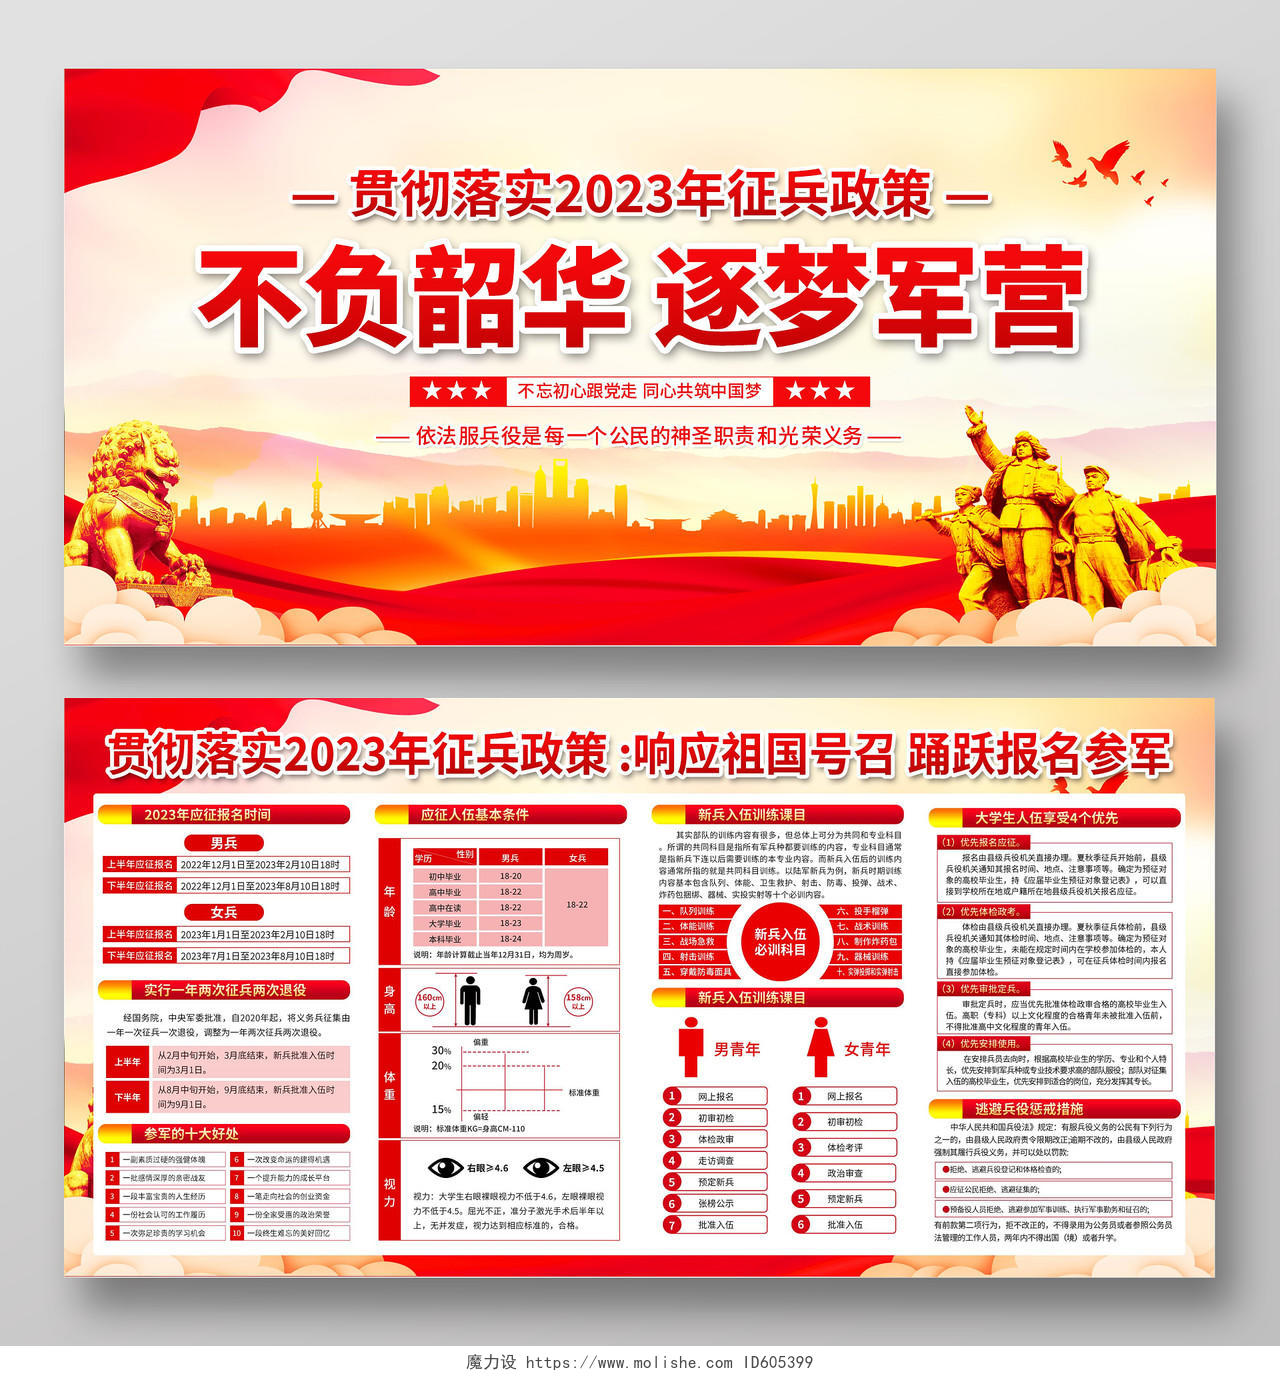 红色简约大气2023年征兵宣传栏海报2023年度征兵新政策解读